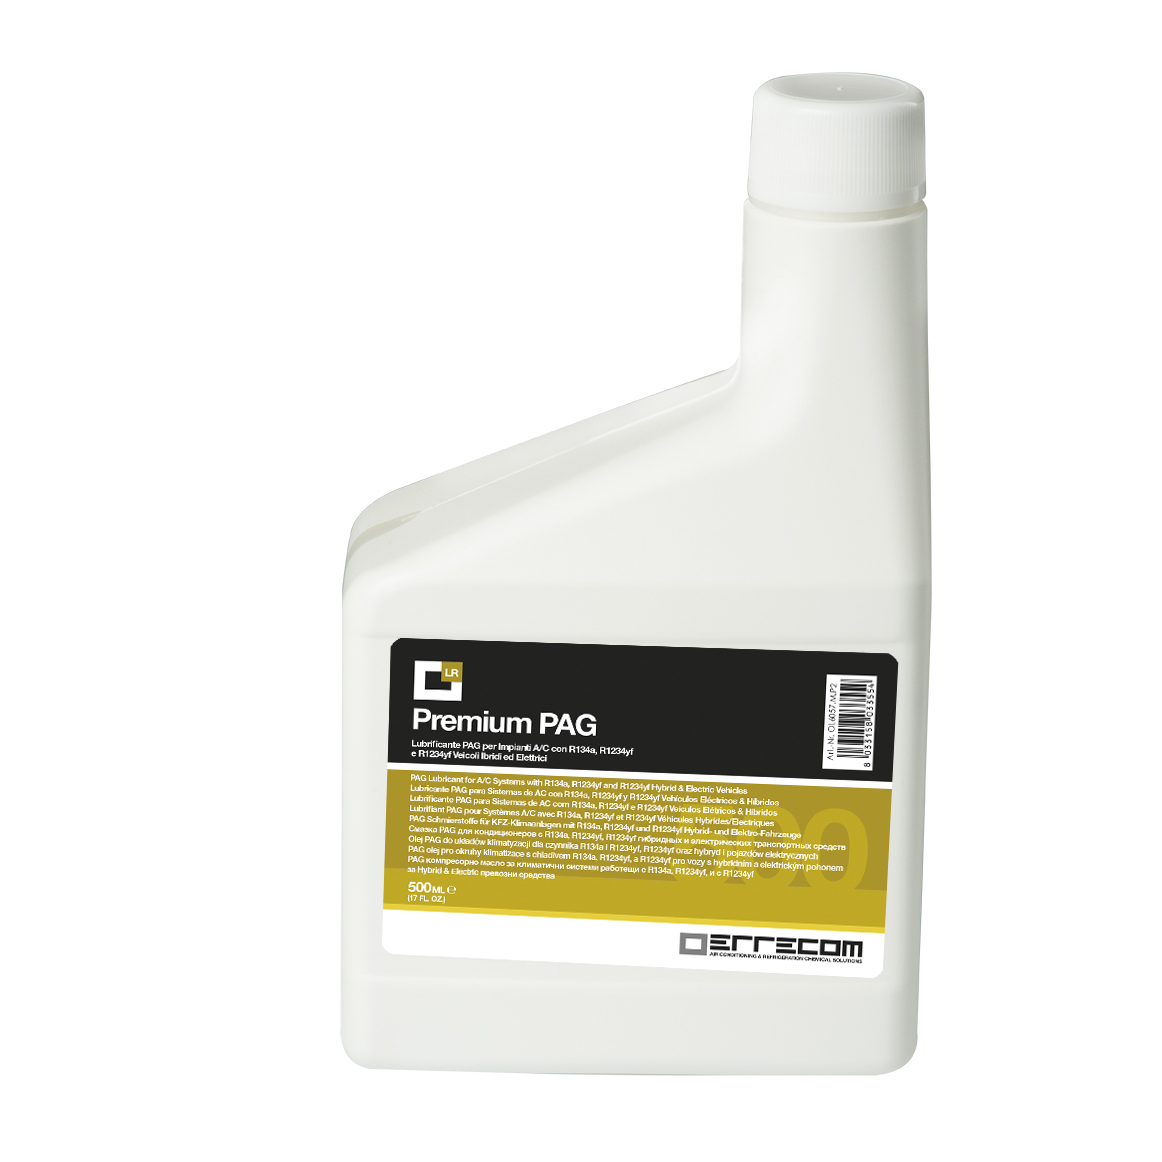 Olio lubrificante Universale AUTO PREMIUM PAG - Tanica in Plastica da 500 ml - Confezione n° 12 pz. (totale 6 litri)